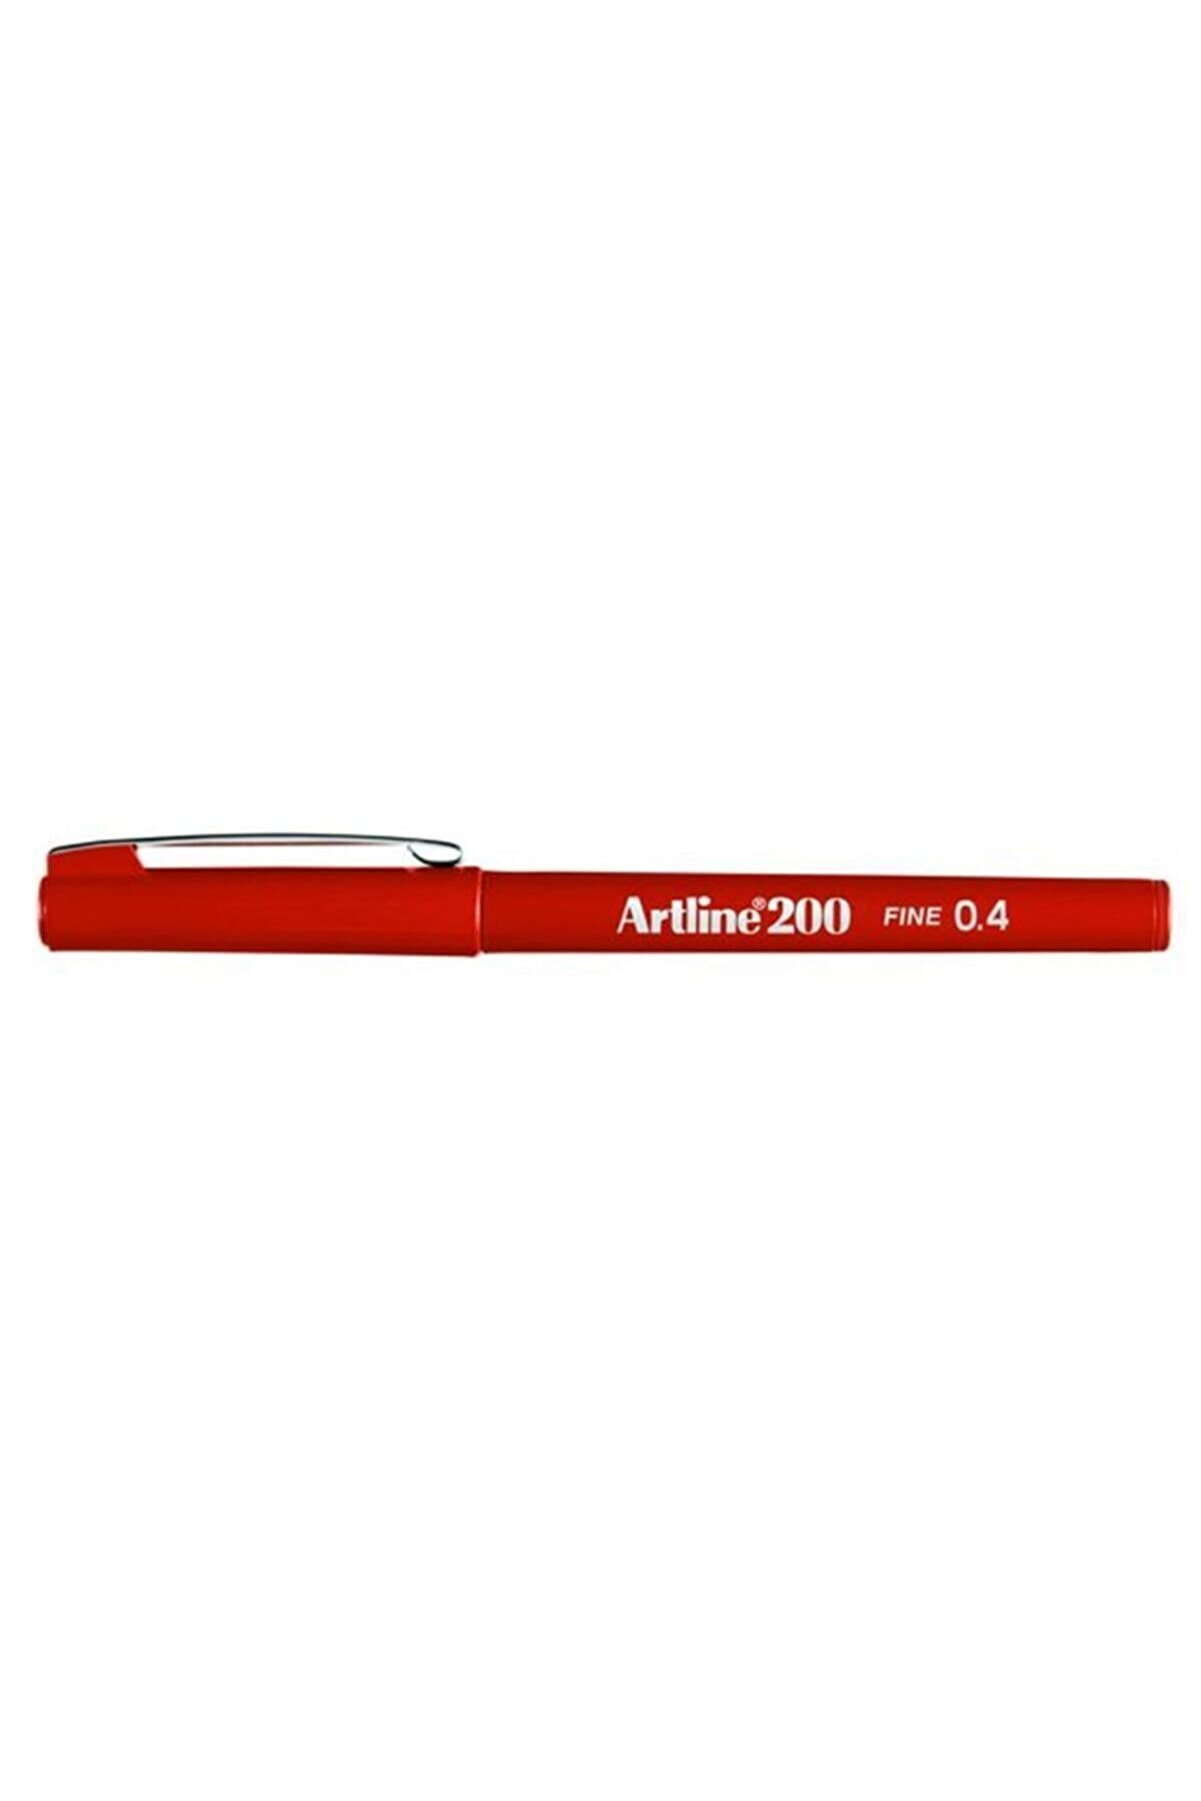 artline 200 Fineliner Kalem 0.4 mm Koyu Kırmızı